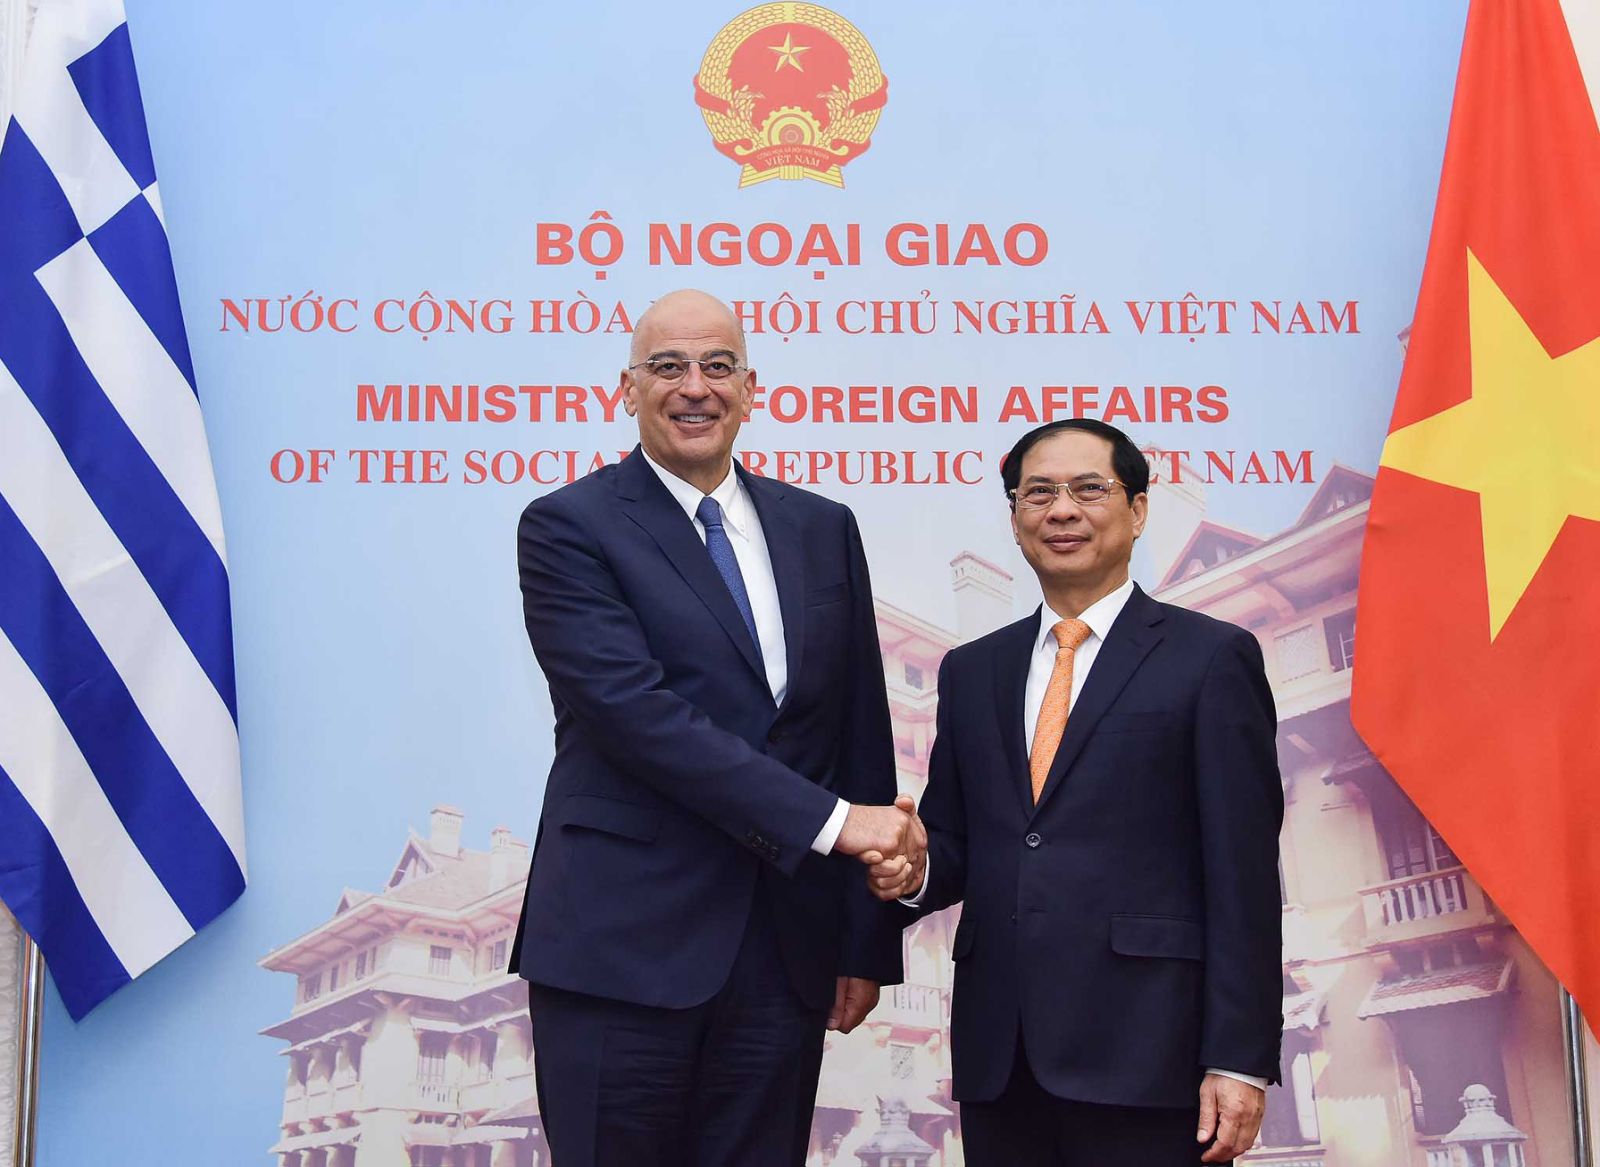 Hiệp định Thương mại Việt Nam-Hy Lạp: Việc ký kết hiệp định thương mại giữa Việt Nam và Hy Lạp mở ra cơ hội mới cho sự phát triển kinh tế và thương mại giữa hai quốc gia. Hai bên sẽ hợp tác trong nhiều lĩnh vực, từ hàng hóa đến dịch vụ và bảo vệ đầu tư. Hãy xem hình ảnh để hiểu thêm về cơ hội kinh doanh và đầu tư tại Việt Nam và Hy Lạp.